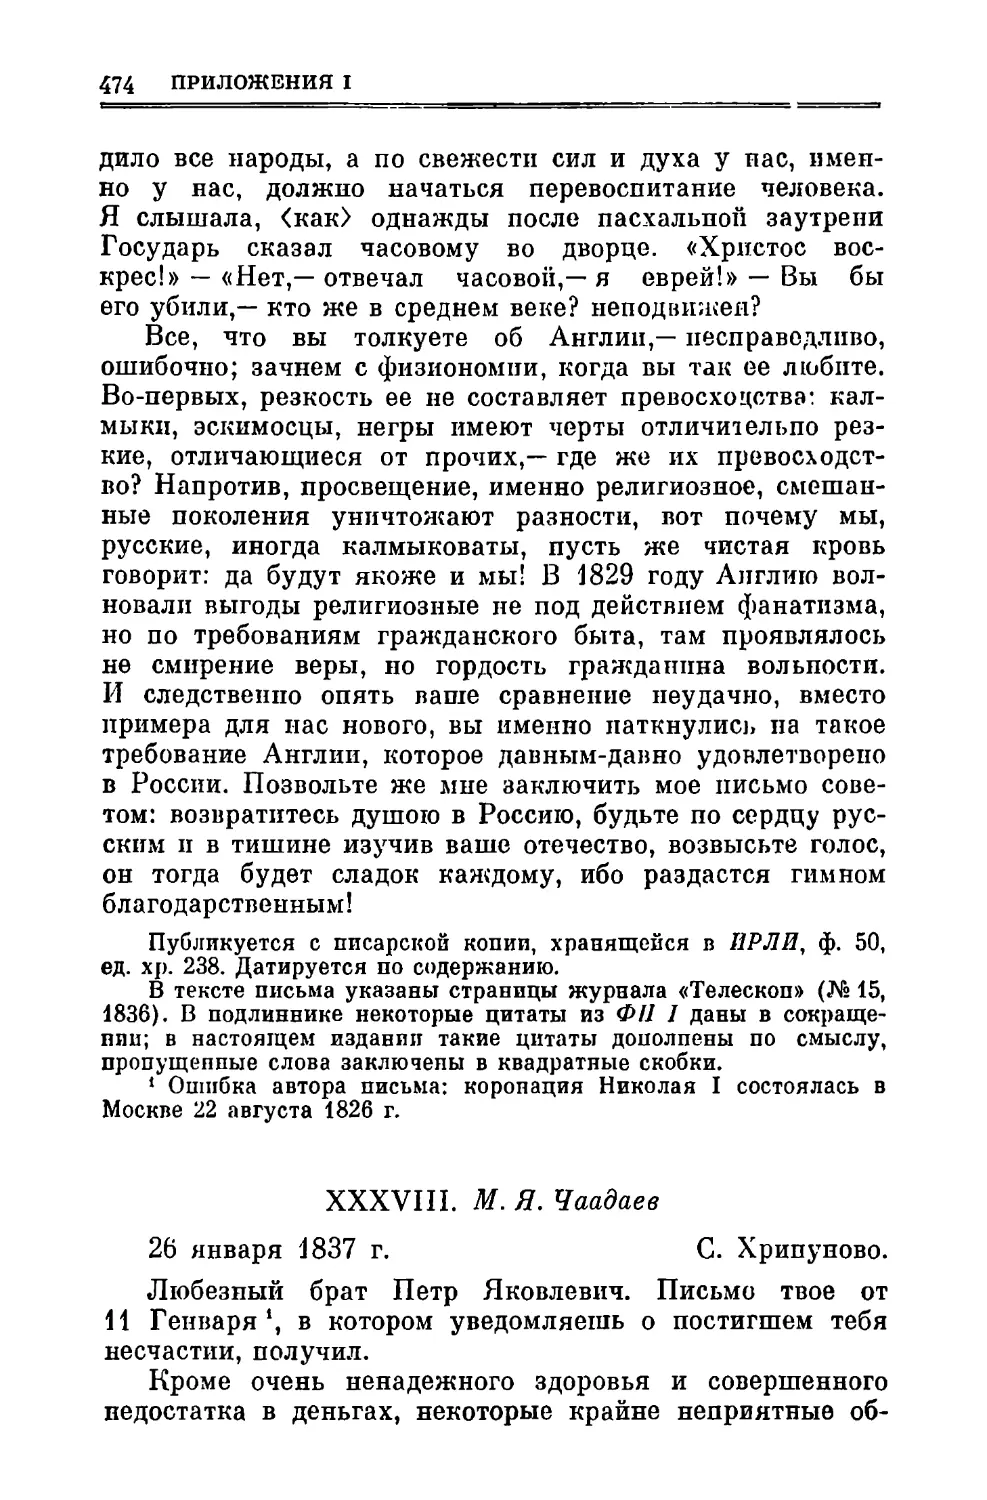 XXXVIII. Чаадаев М.Я. 26.1.1837